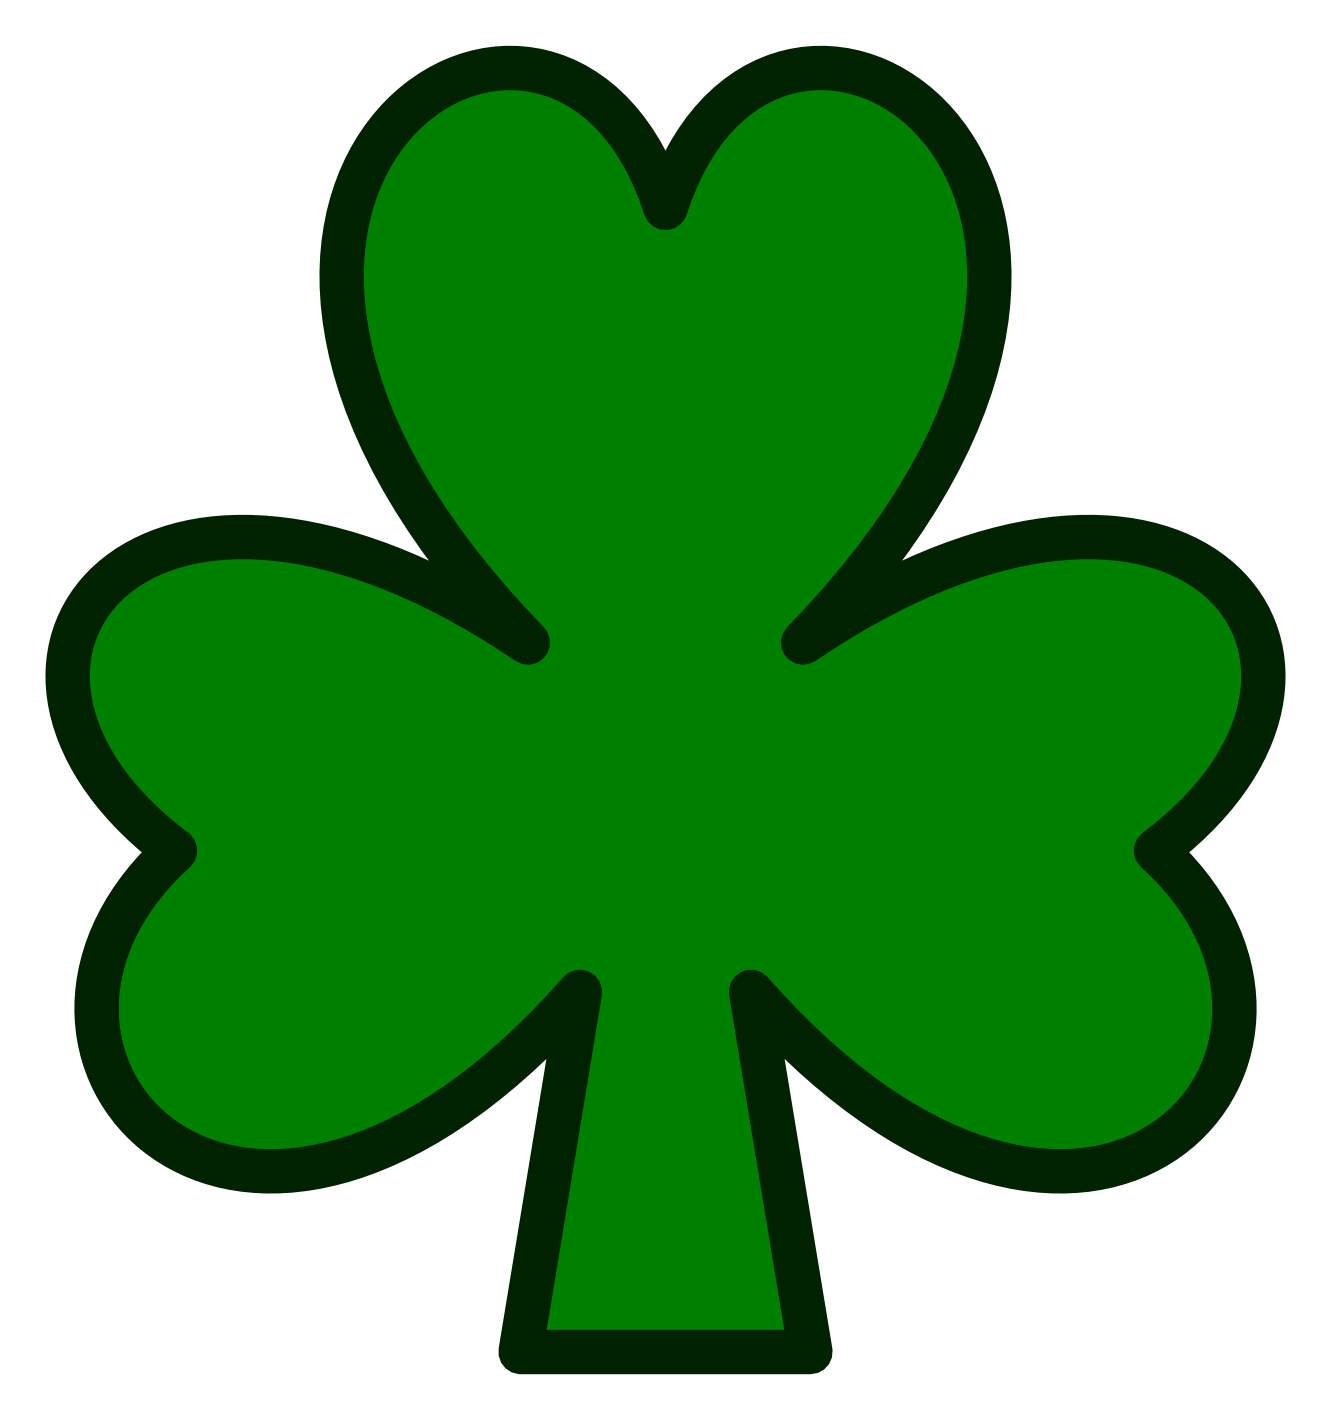 Irish Shamrock Clipart